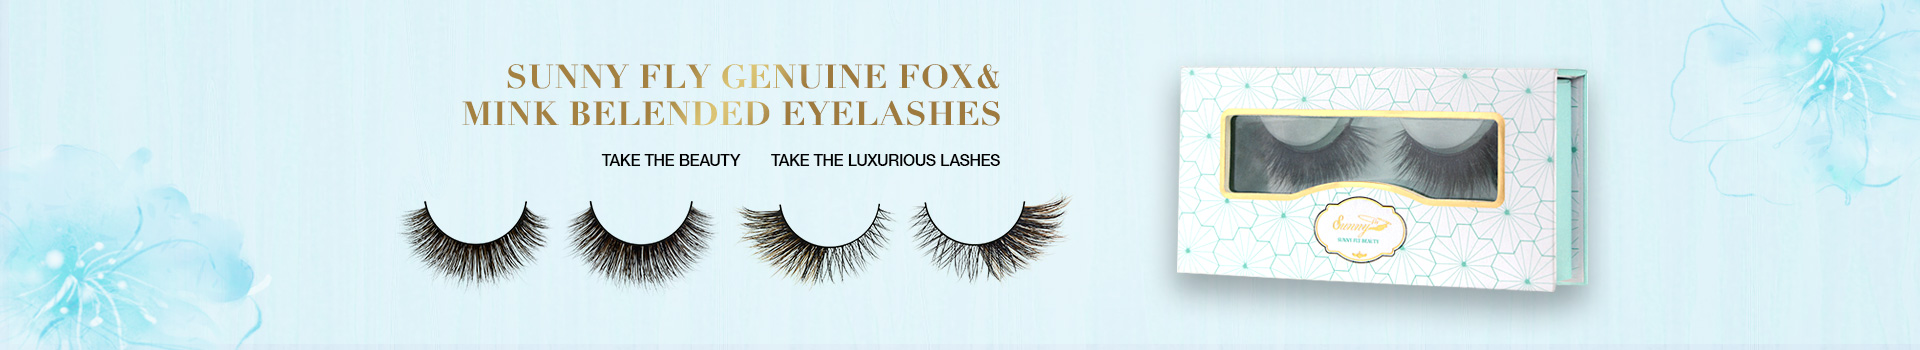 Fox & Mink Fur Blended Eyelashes FMB21